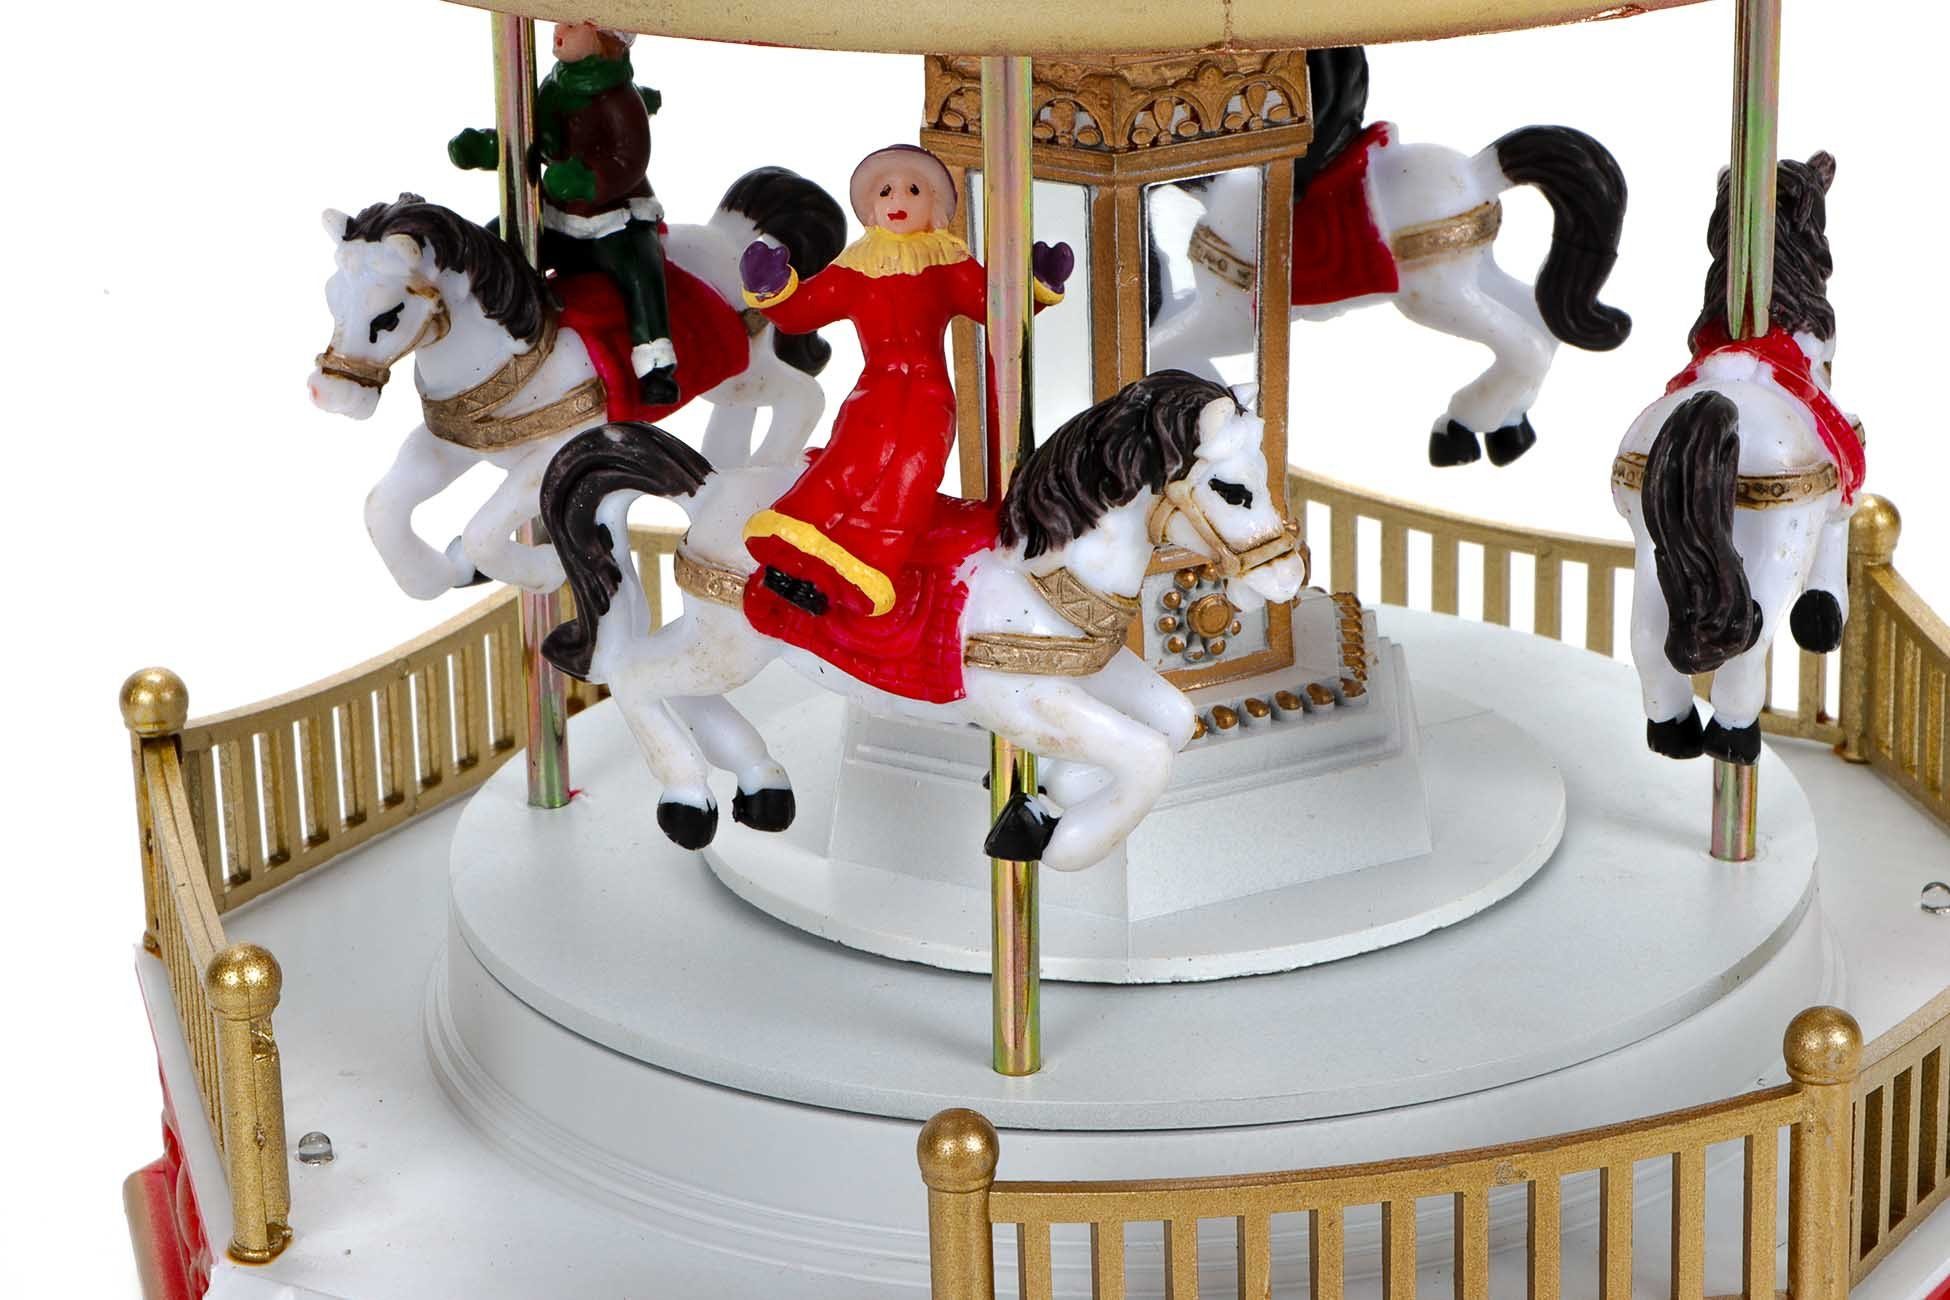 4 Karussellpferden, Weihnachtskarussell, LuVille Jahrmarktkarussell Fahrgästen Weihnachtsszene Drehendes mit 3